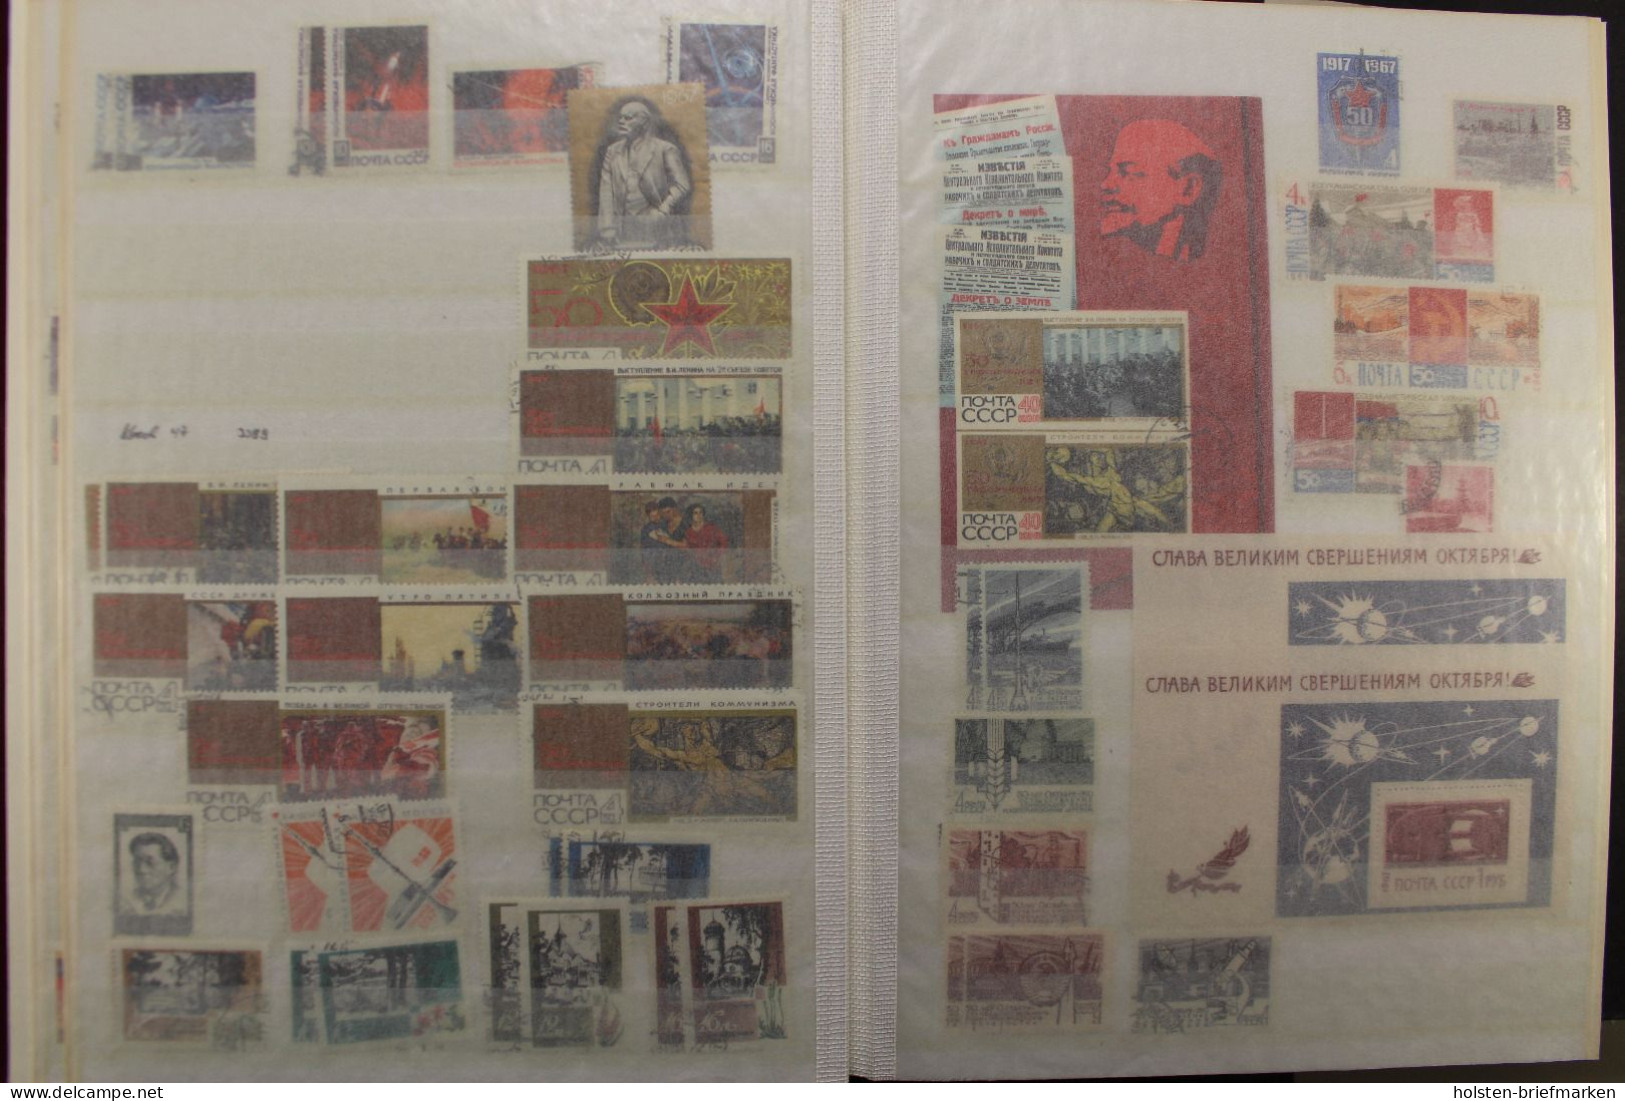 Sowjetunion 1923-1991, große Sammlung in 5 Alben